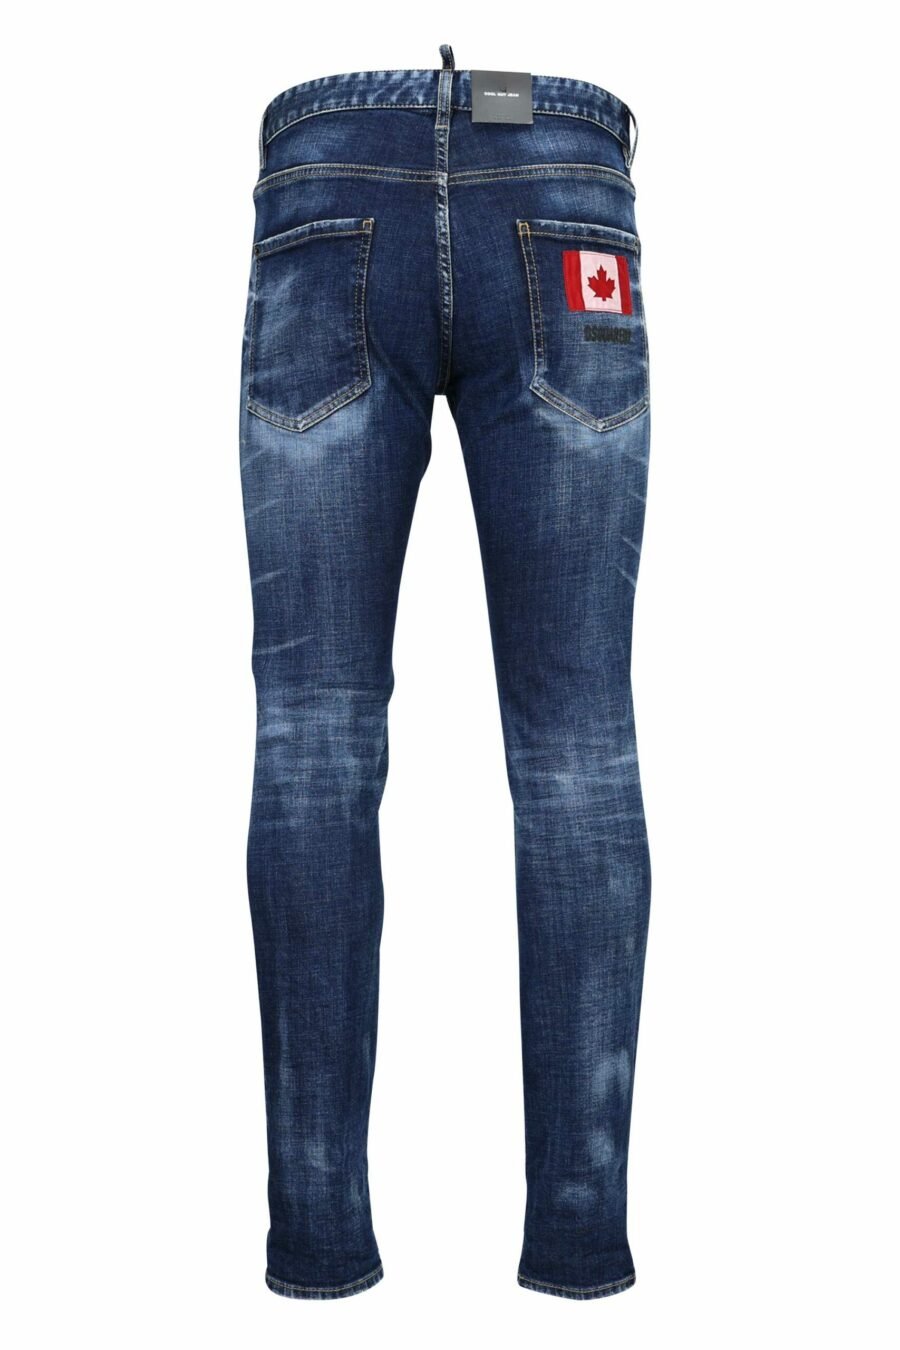 Pantalon en jean bleu effiloché du gars cool - 8052134970072 2 scaled